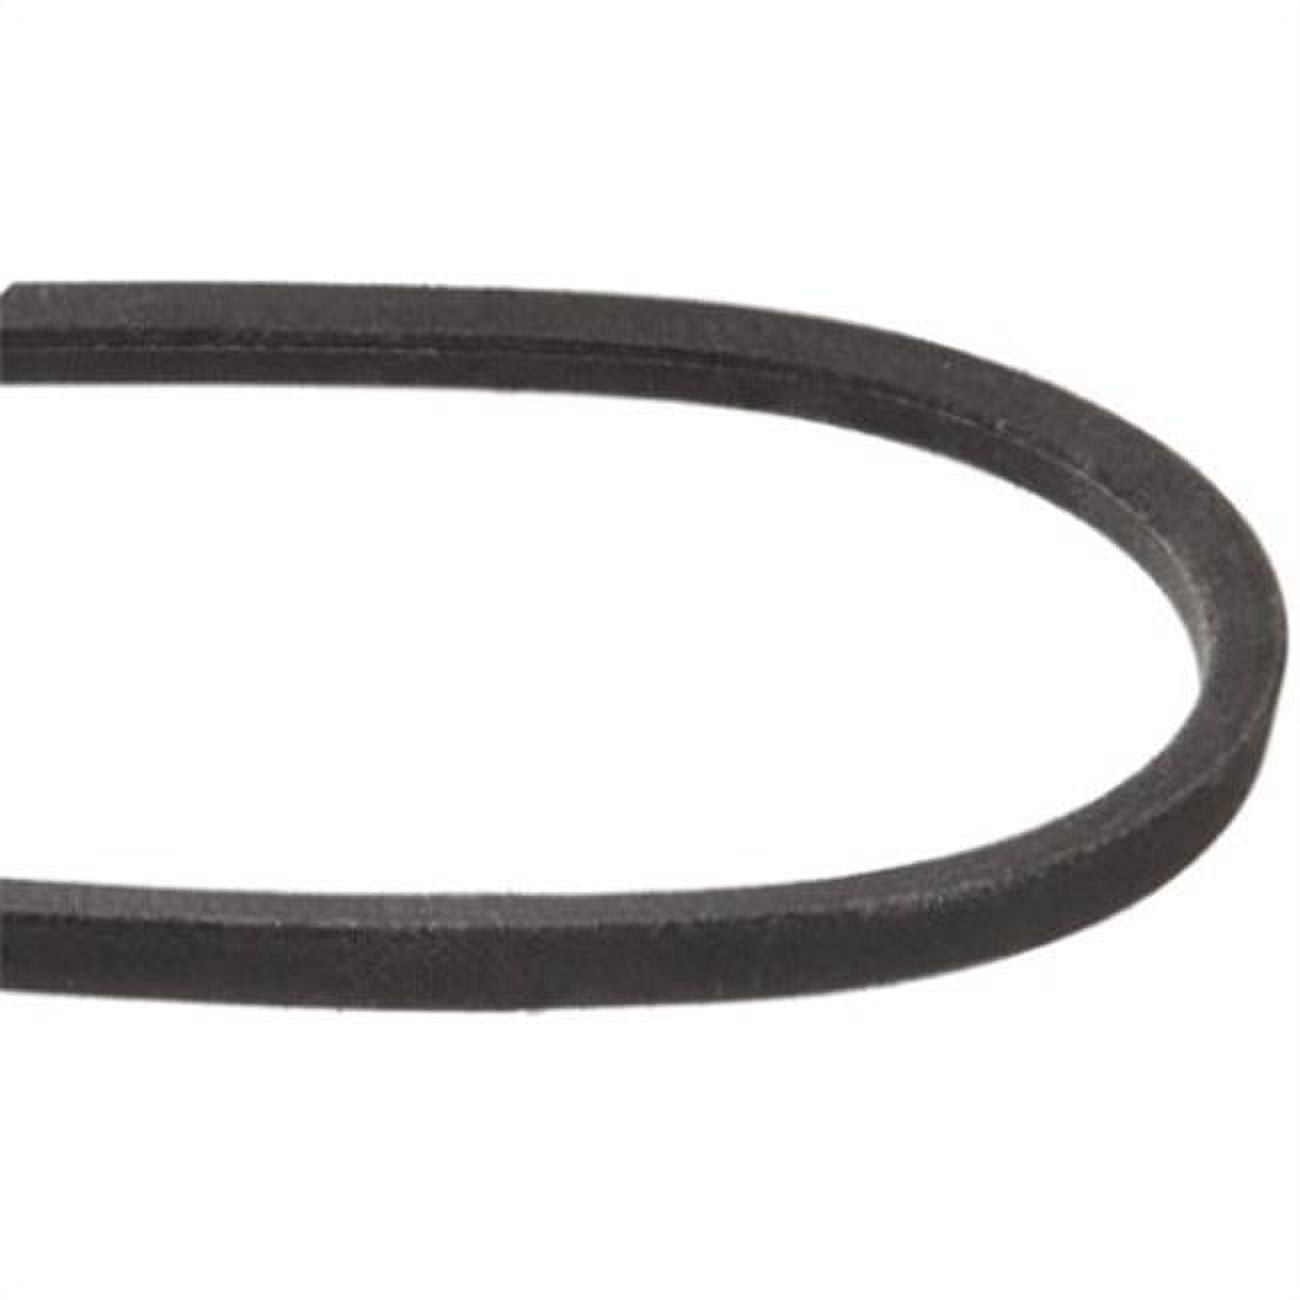 Mxv4-730 0.5 X 73 In. Heavy-duty Lawn & Garden Equipment Belt, Black